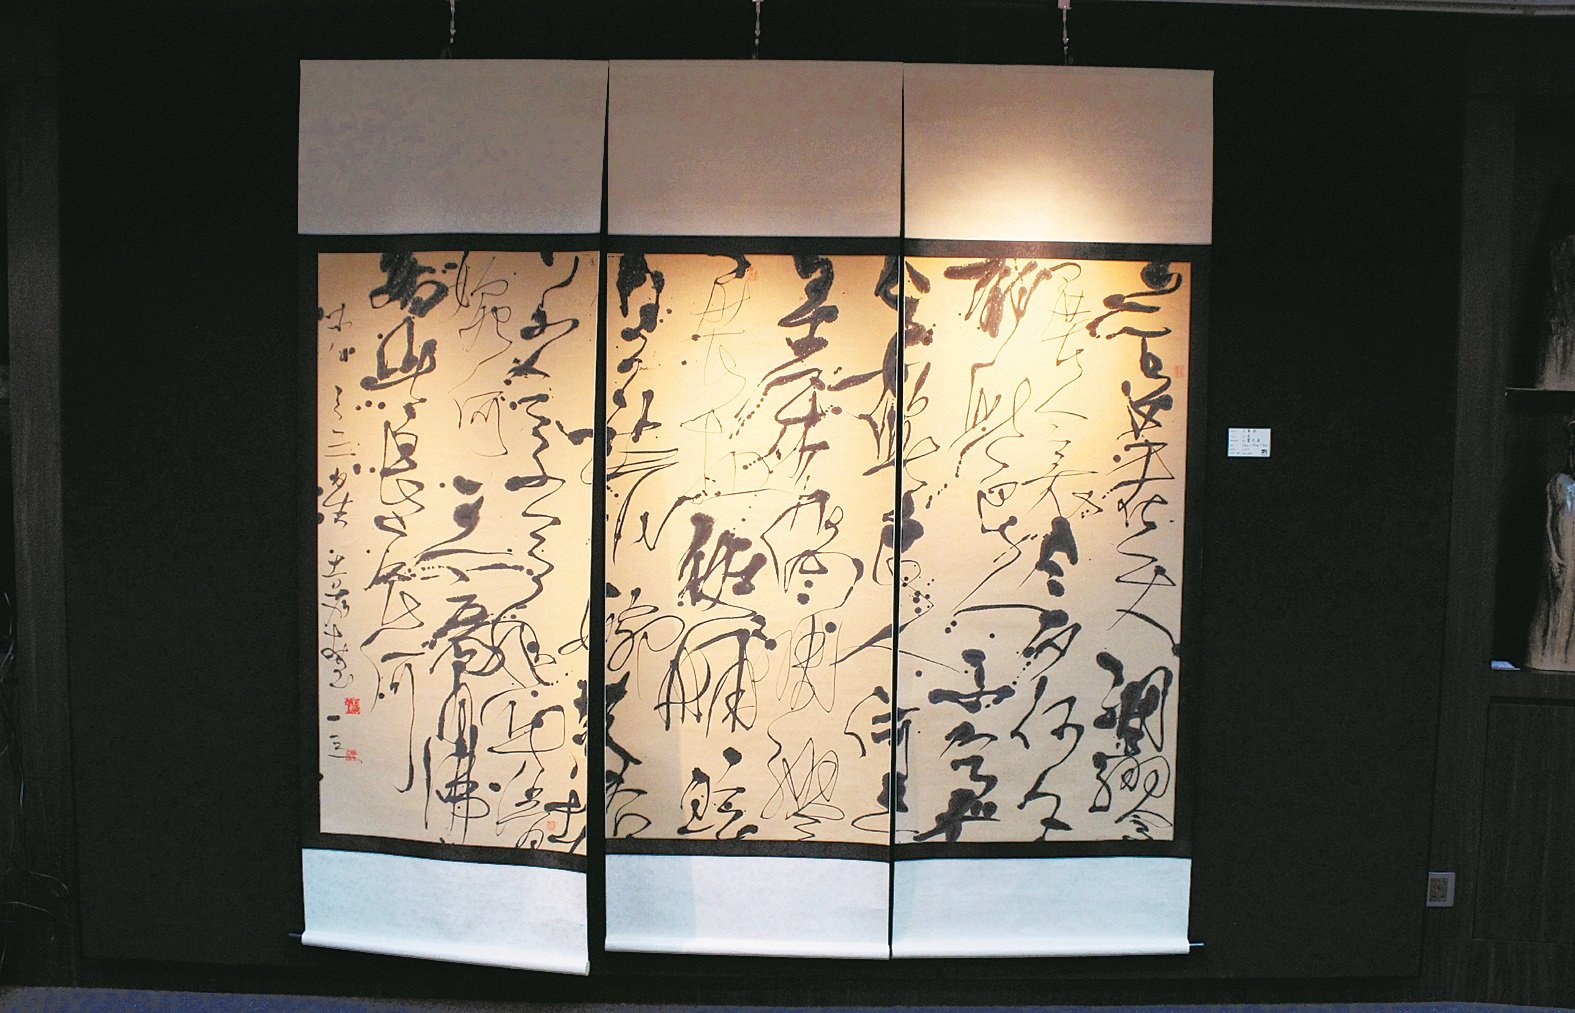 除了展出《辋川集》的40幅作品外，品味斋也展出王嘉堃早期以拼条方式呈现的书法画作。